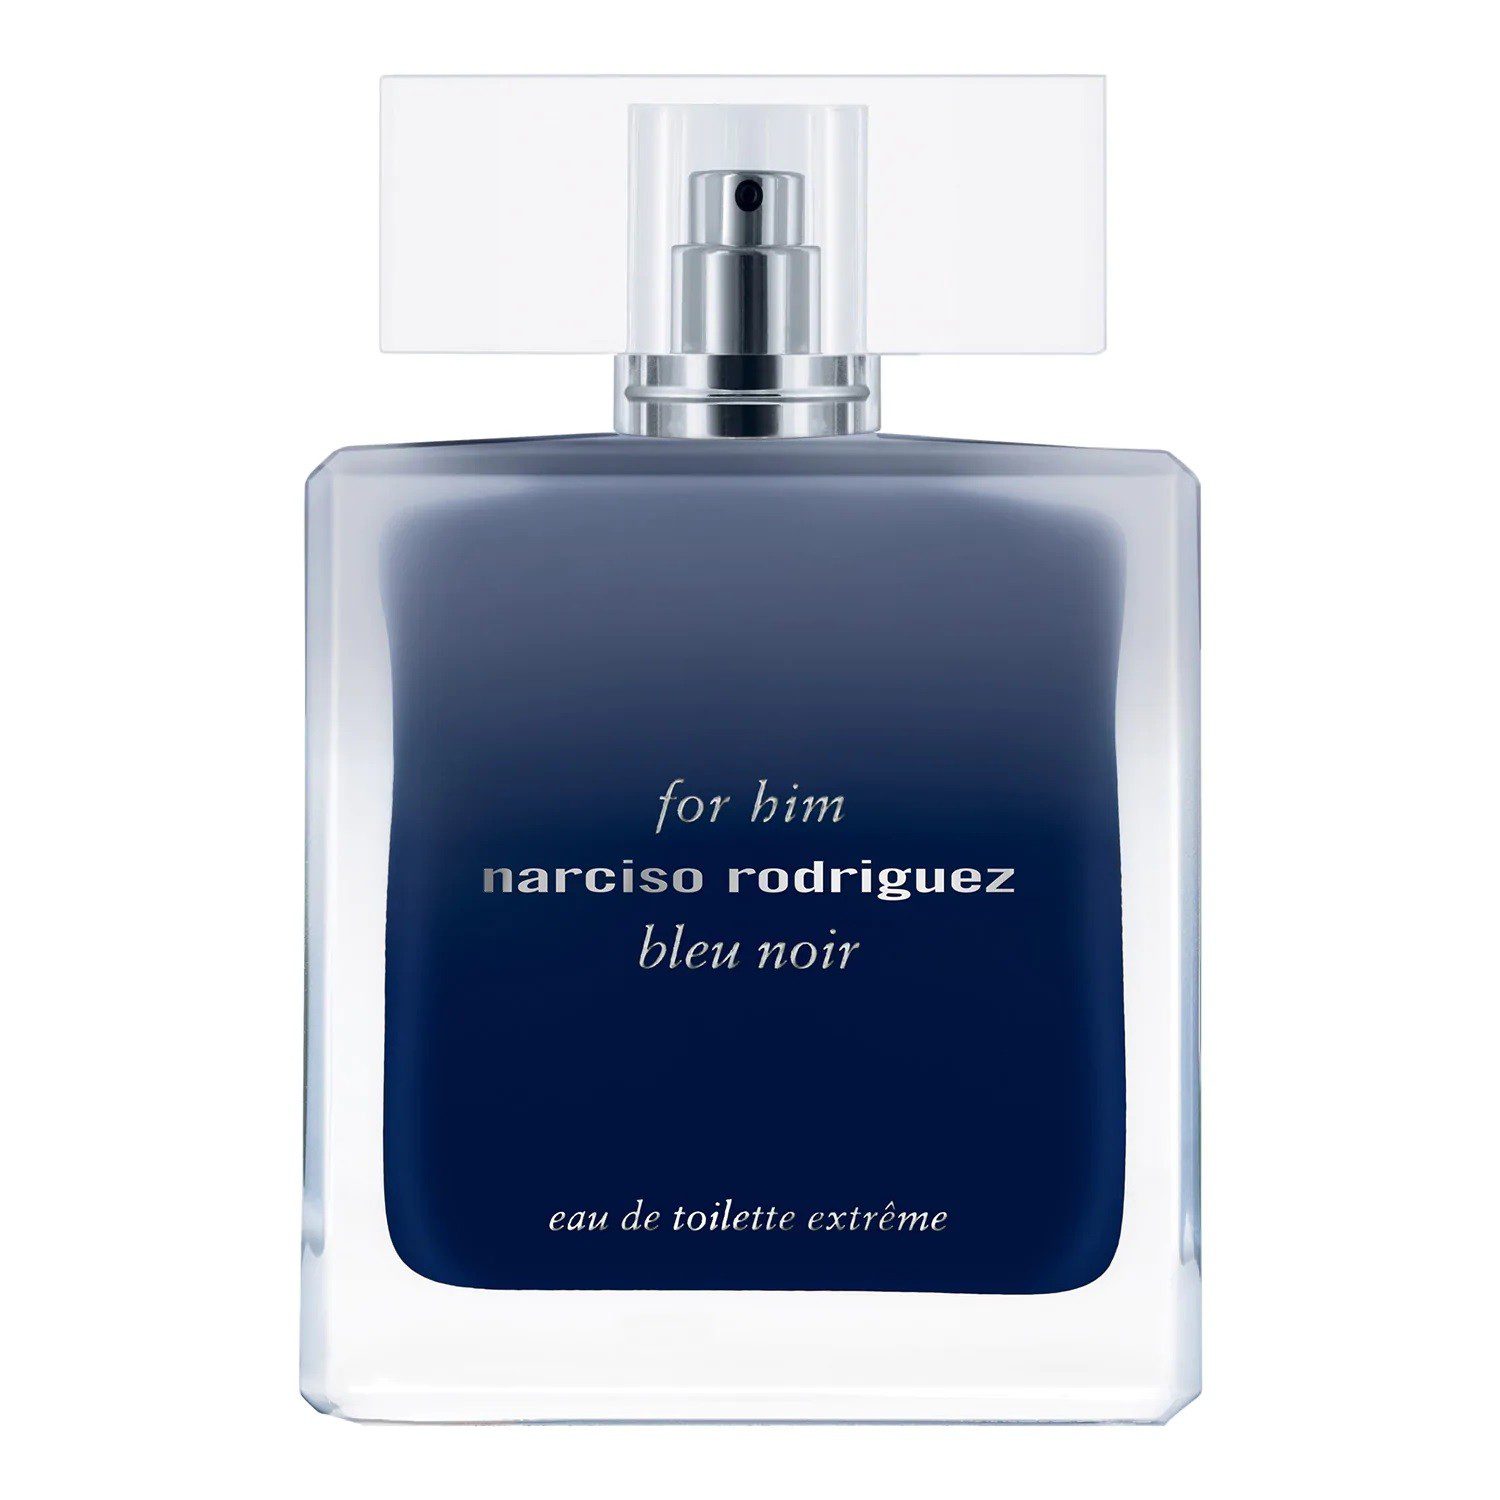 Narciso Rodriguez For Him Bleu Noir Eau De Toilette Extreme pour Homme 100 ml